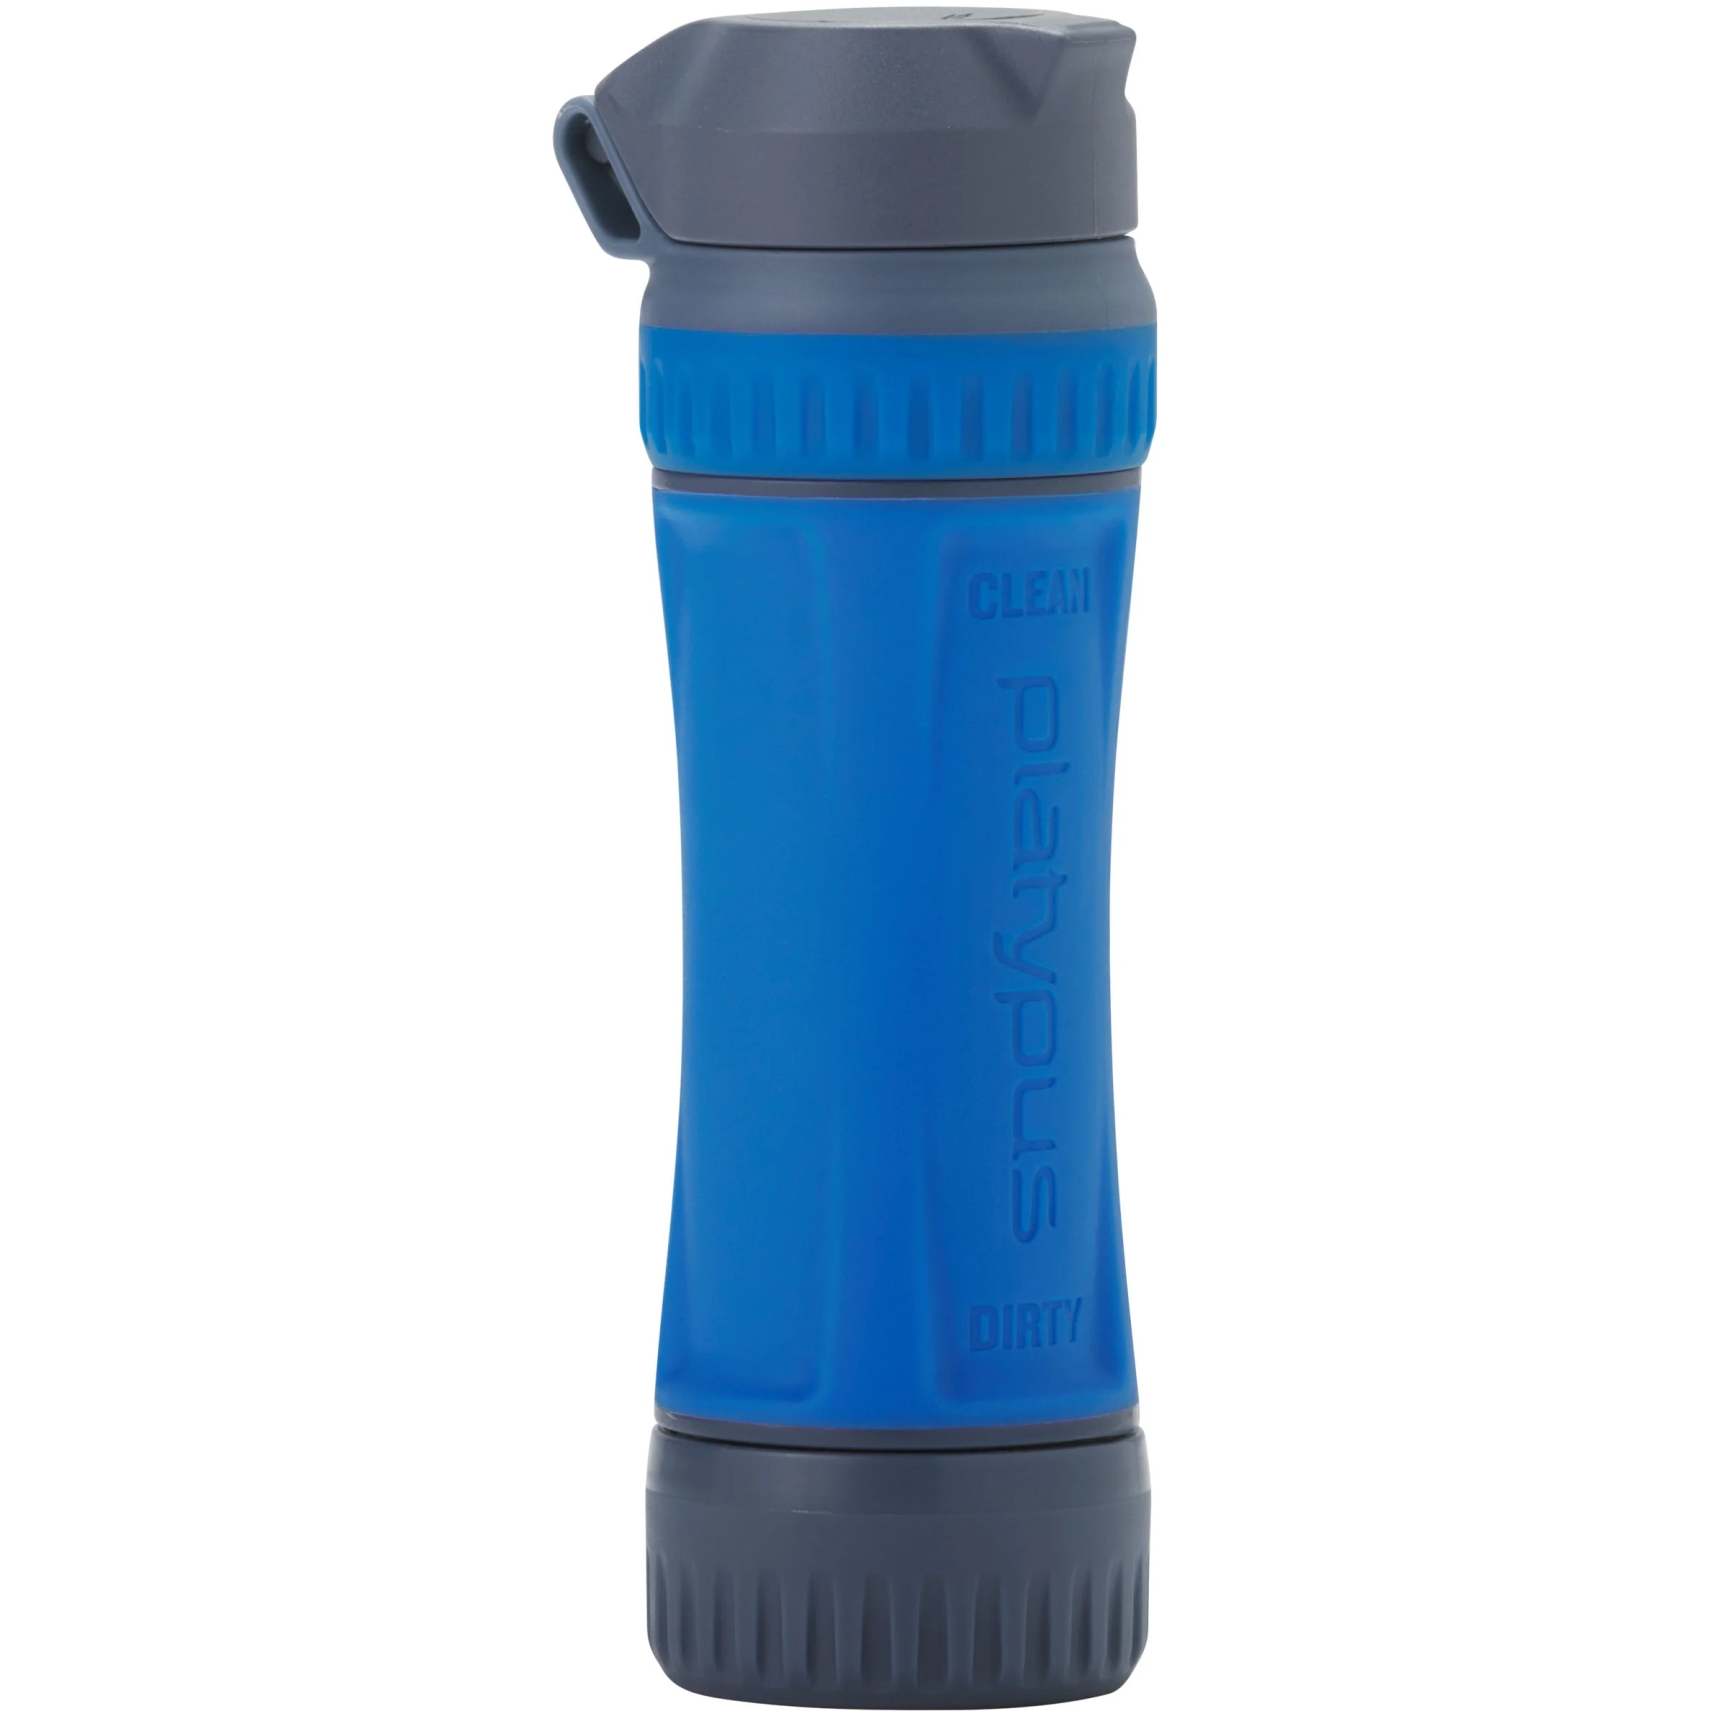 Produktbild von Platypus Quickdraw Wasserfilter - Blau